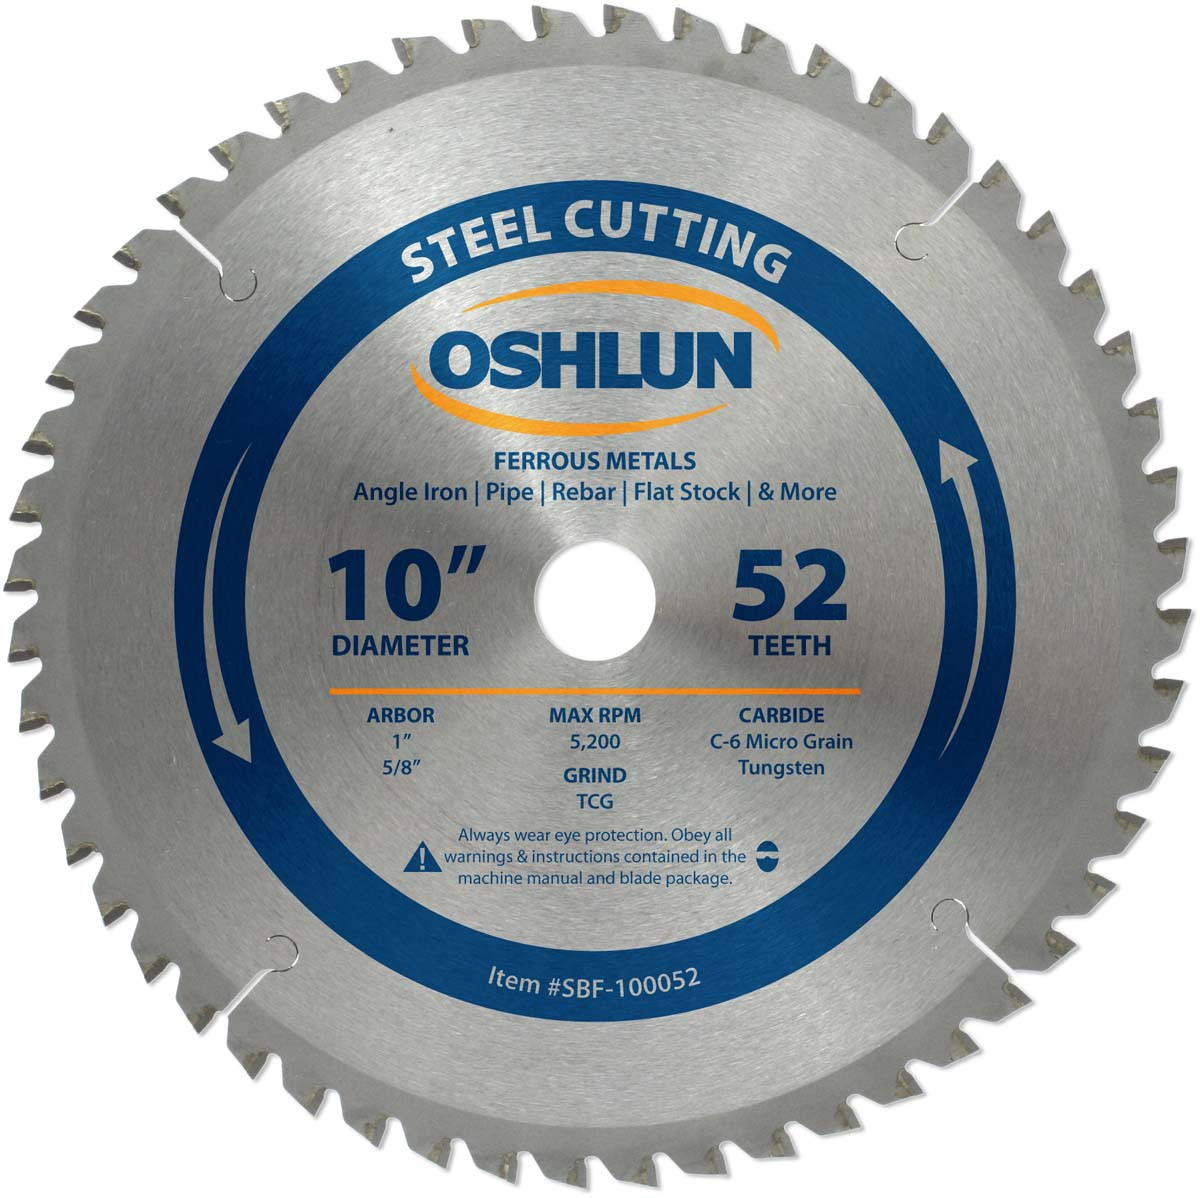 steel circular saw